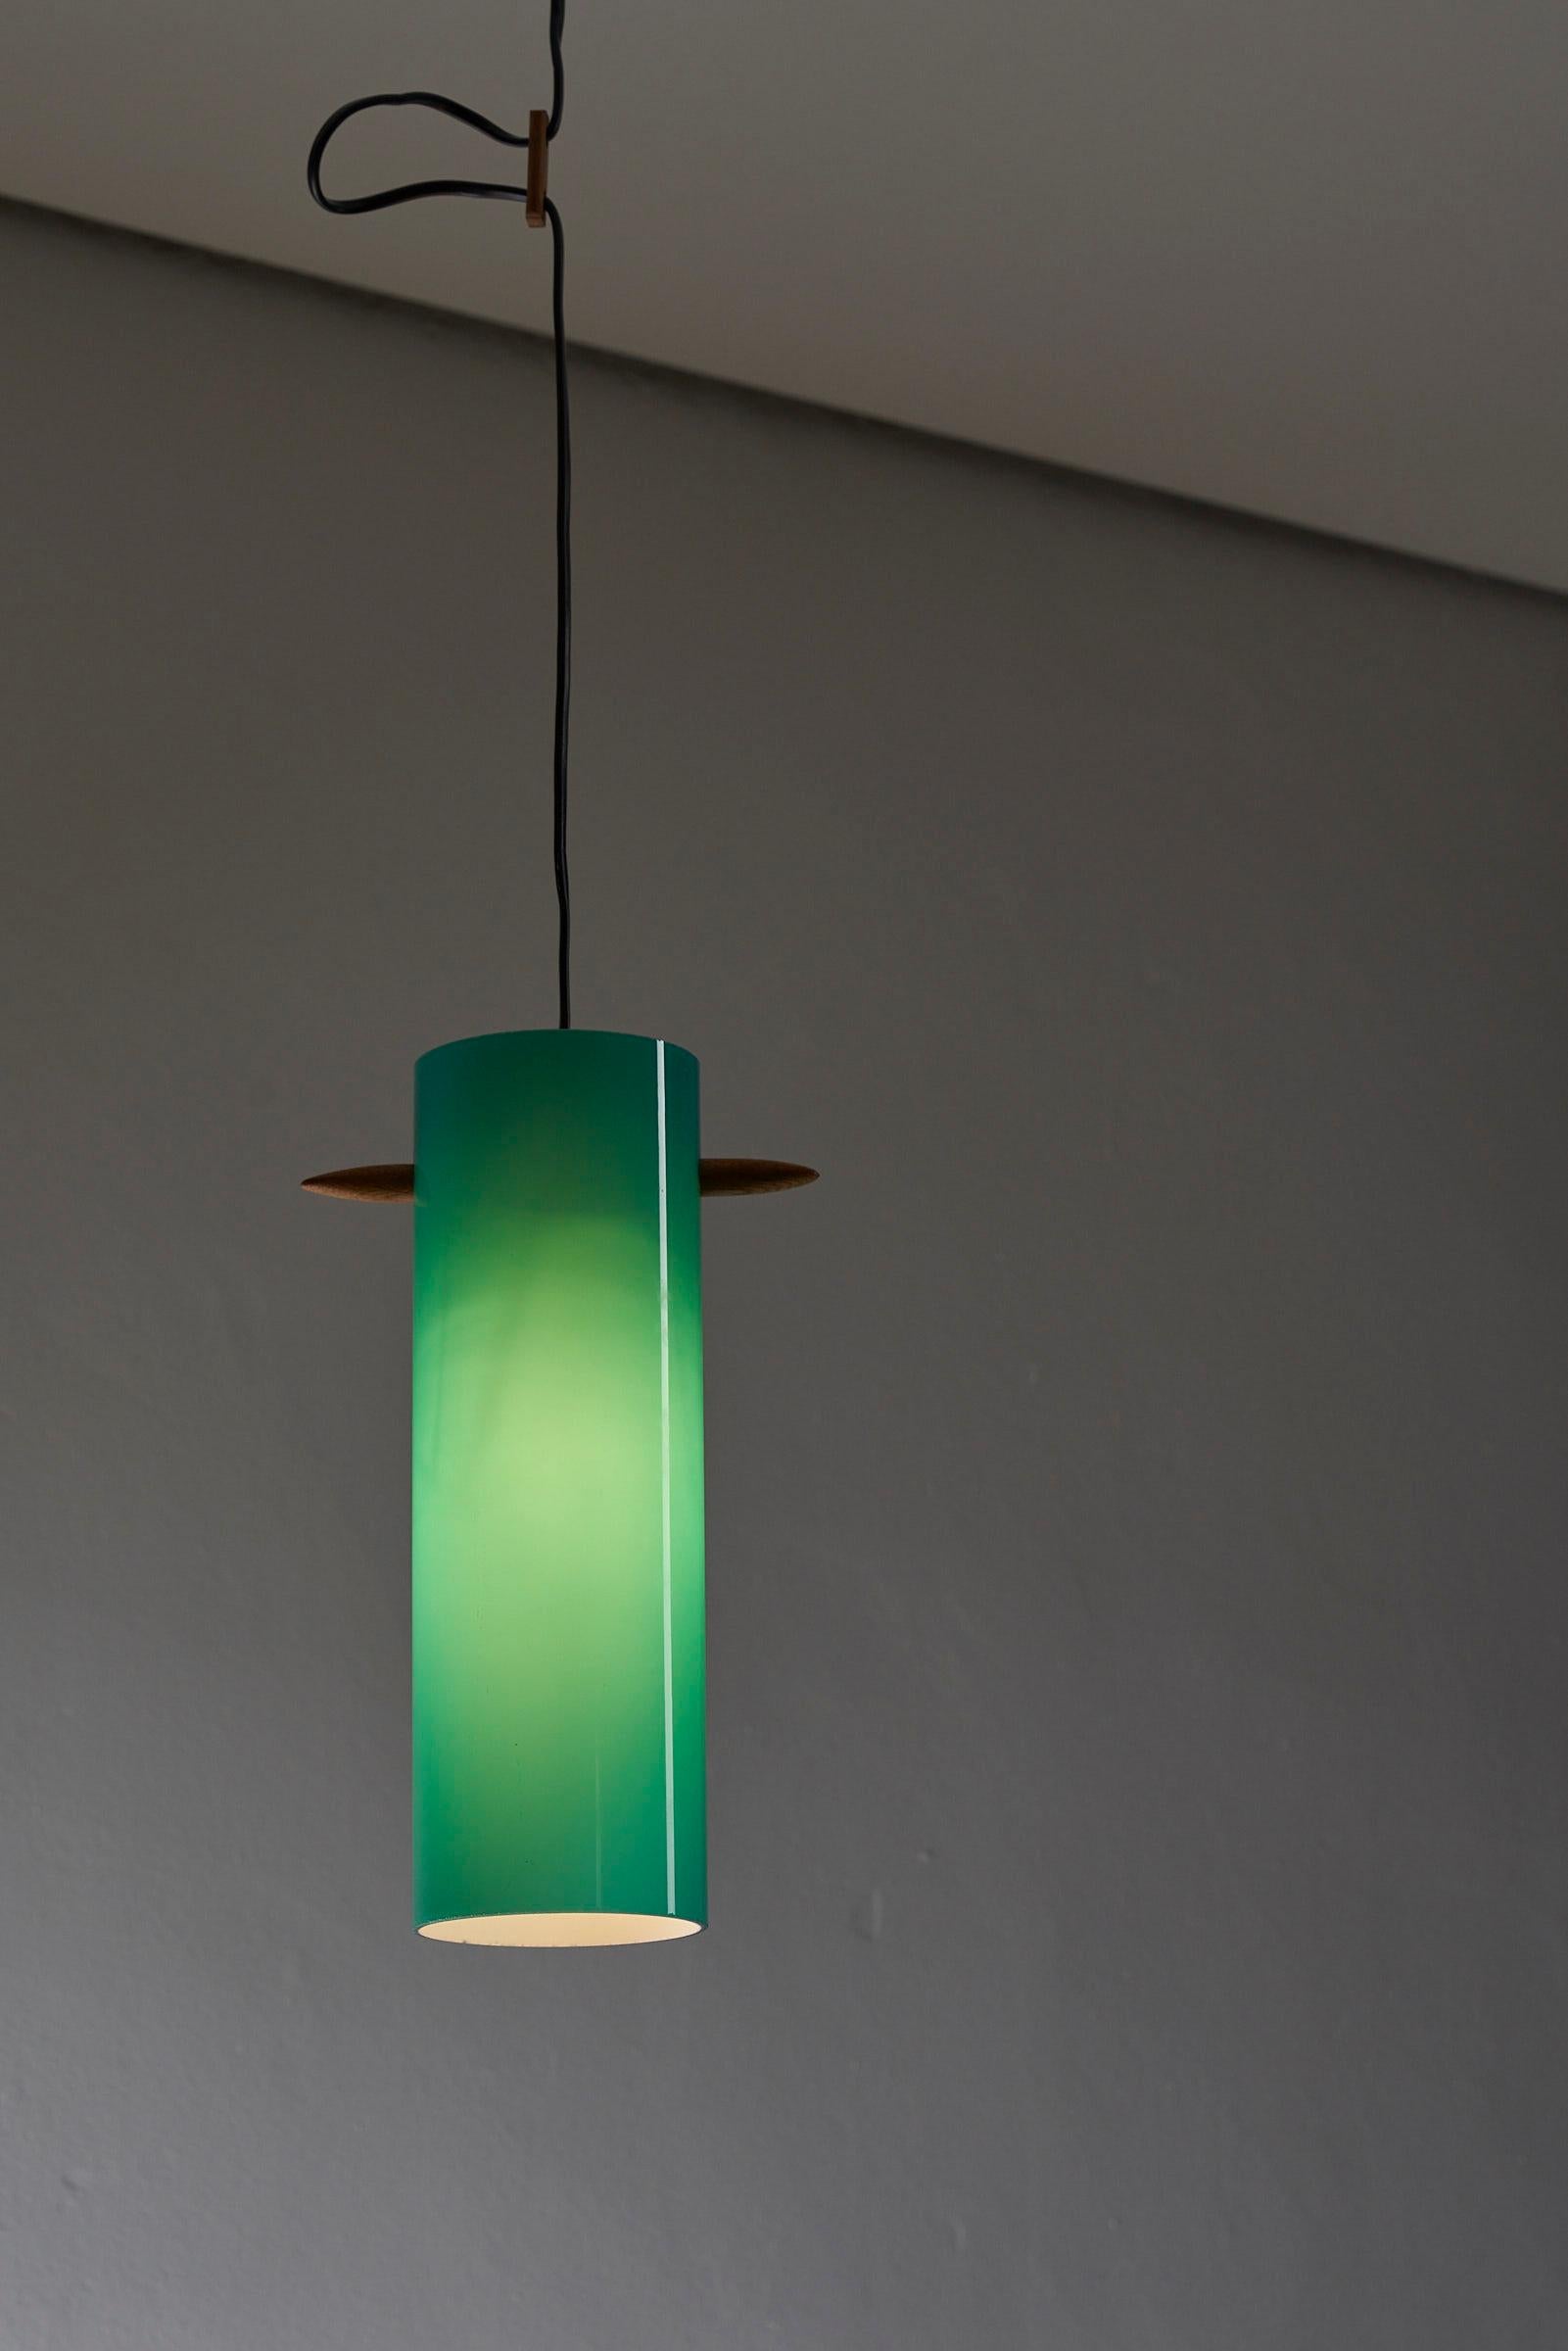 Voici la suspension Petrol Green Glass Cylinder de Luxus, une pièce d'éclairage étonnante et unique qui allie sans effort élégance et éléments naturels. Cette lampe se caractérise par un captivant cylindre en verre plein d'une magnifique couleur